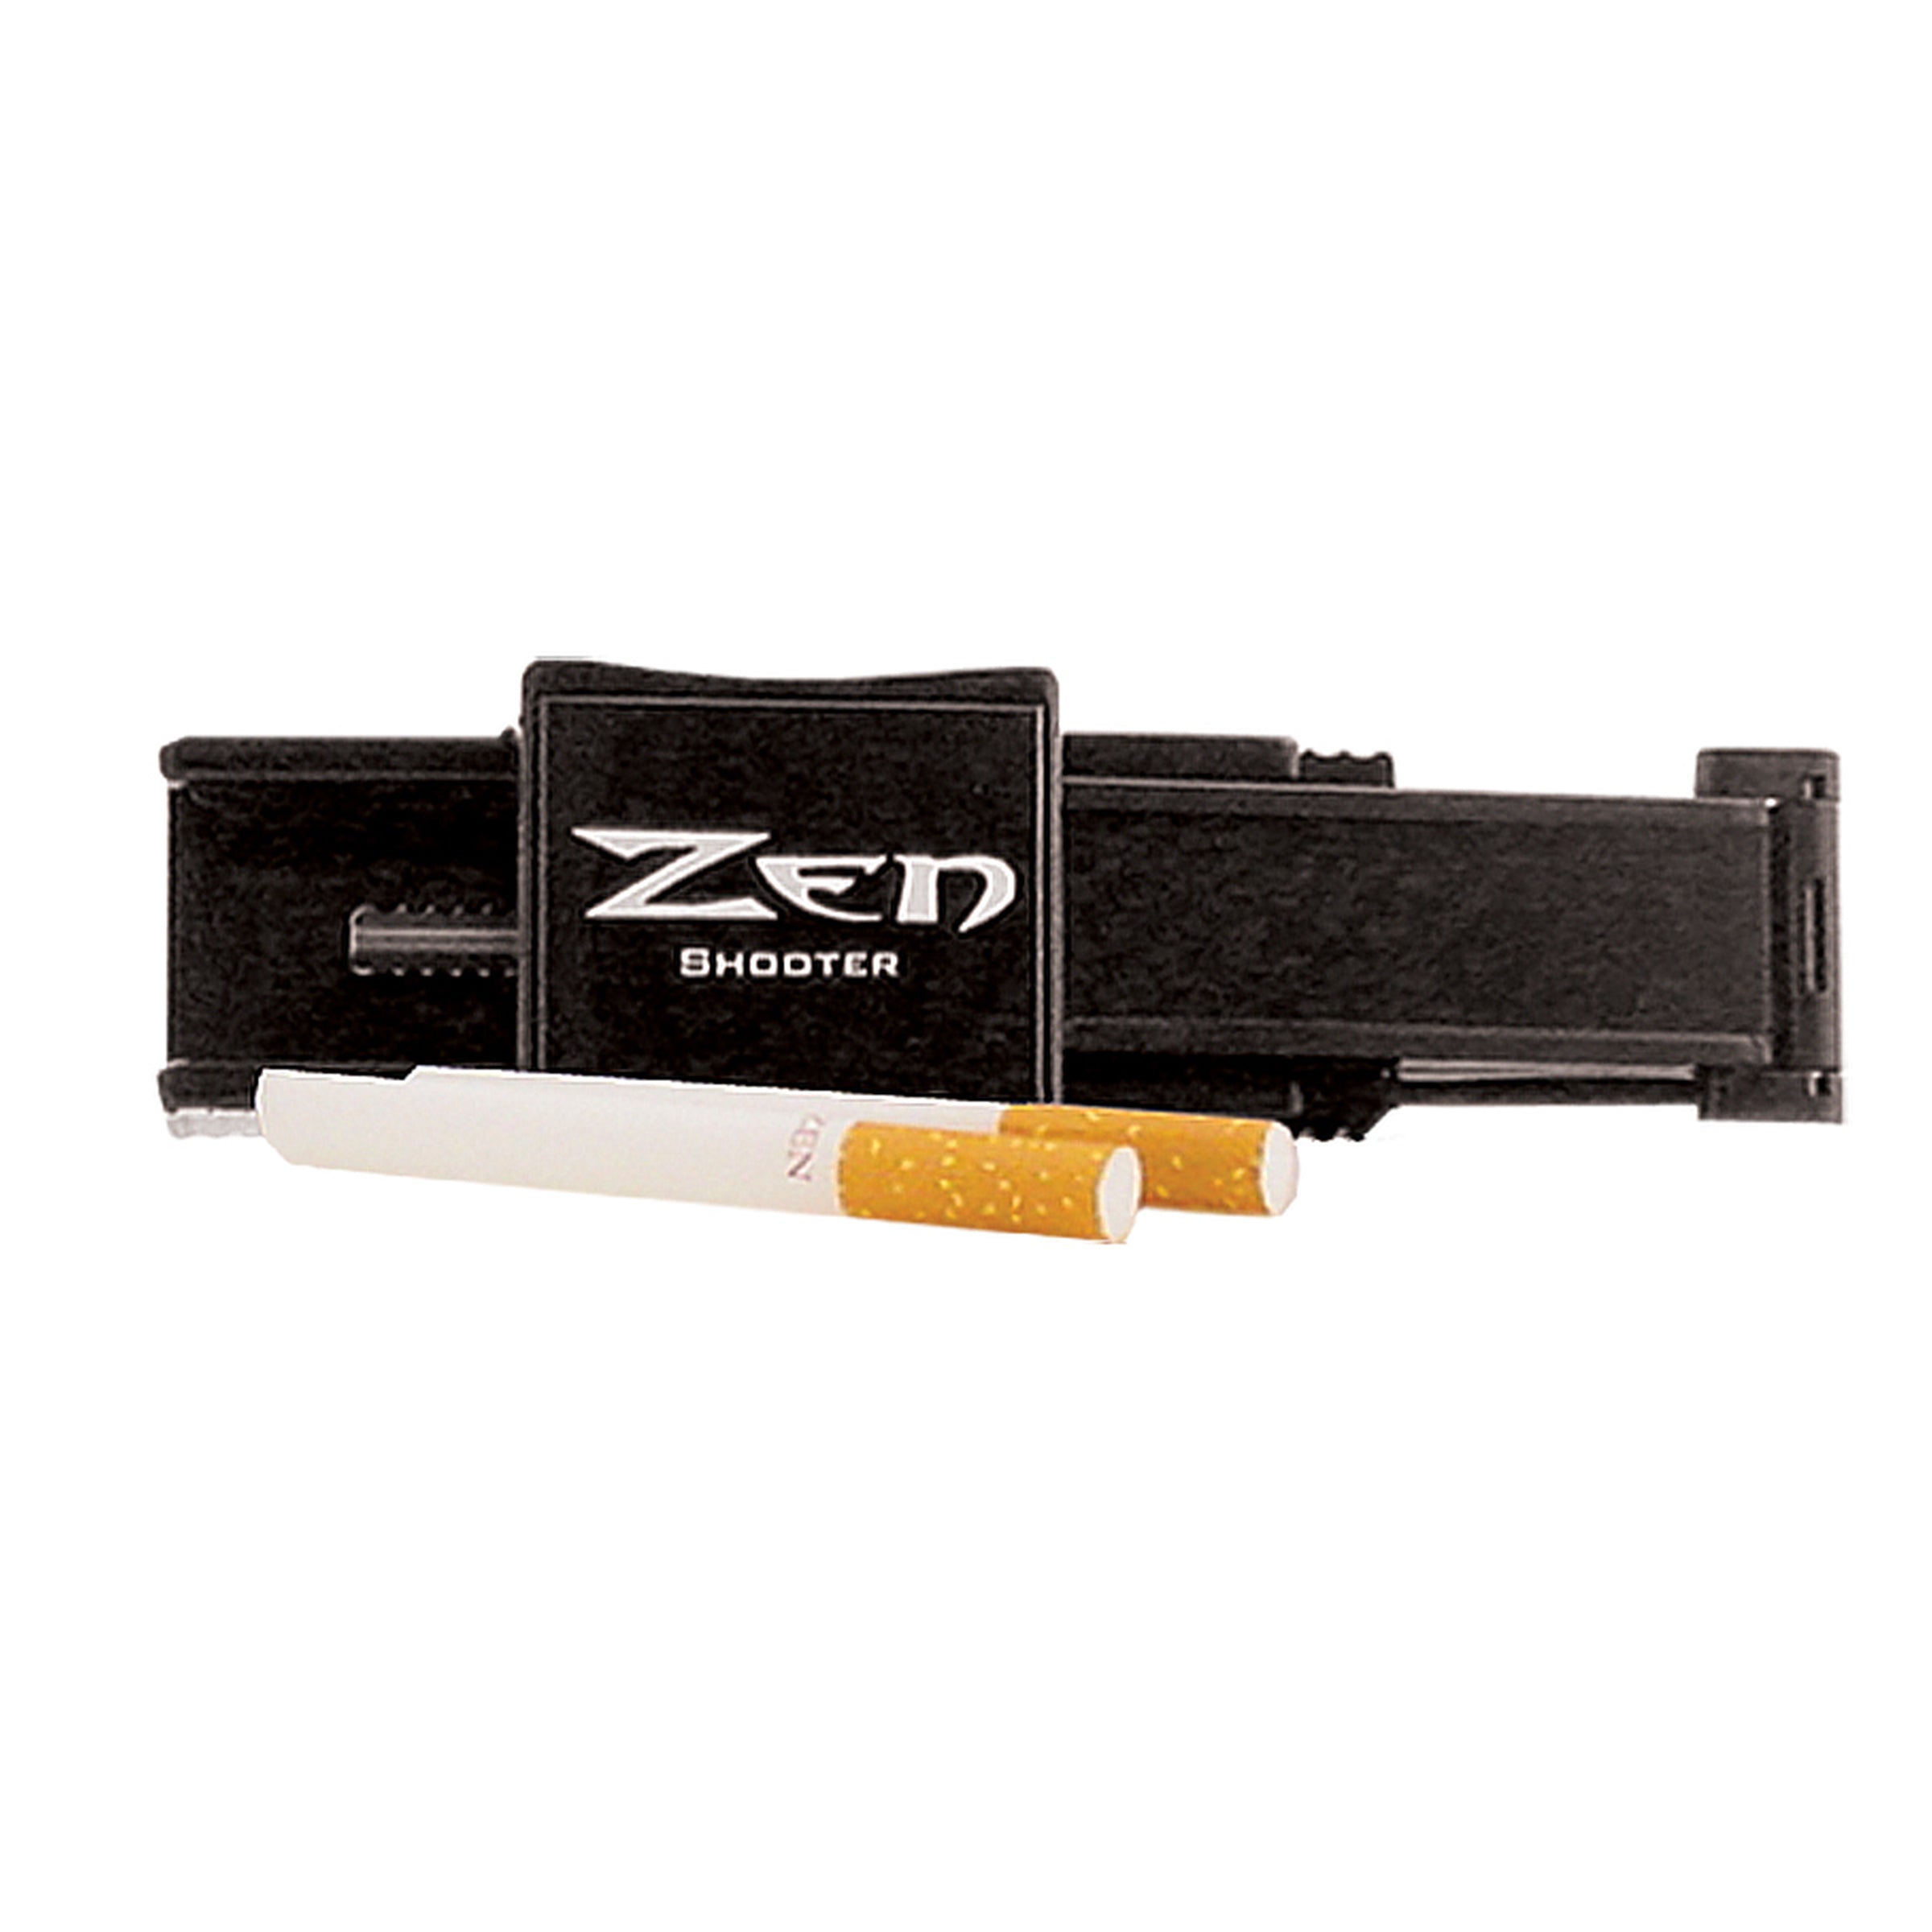 Zen Shooter / Injector Cigarette Machine